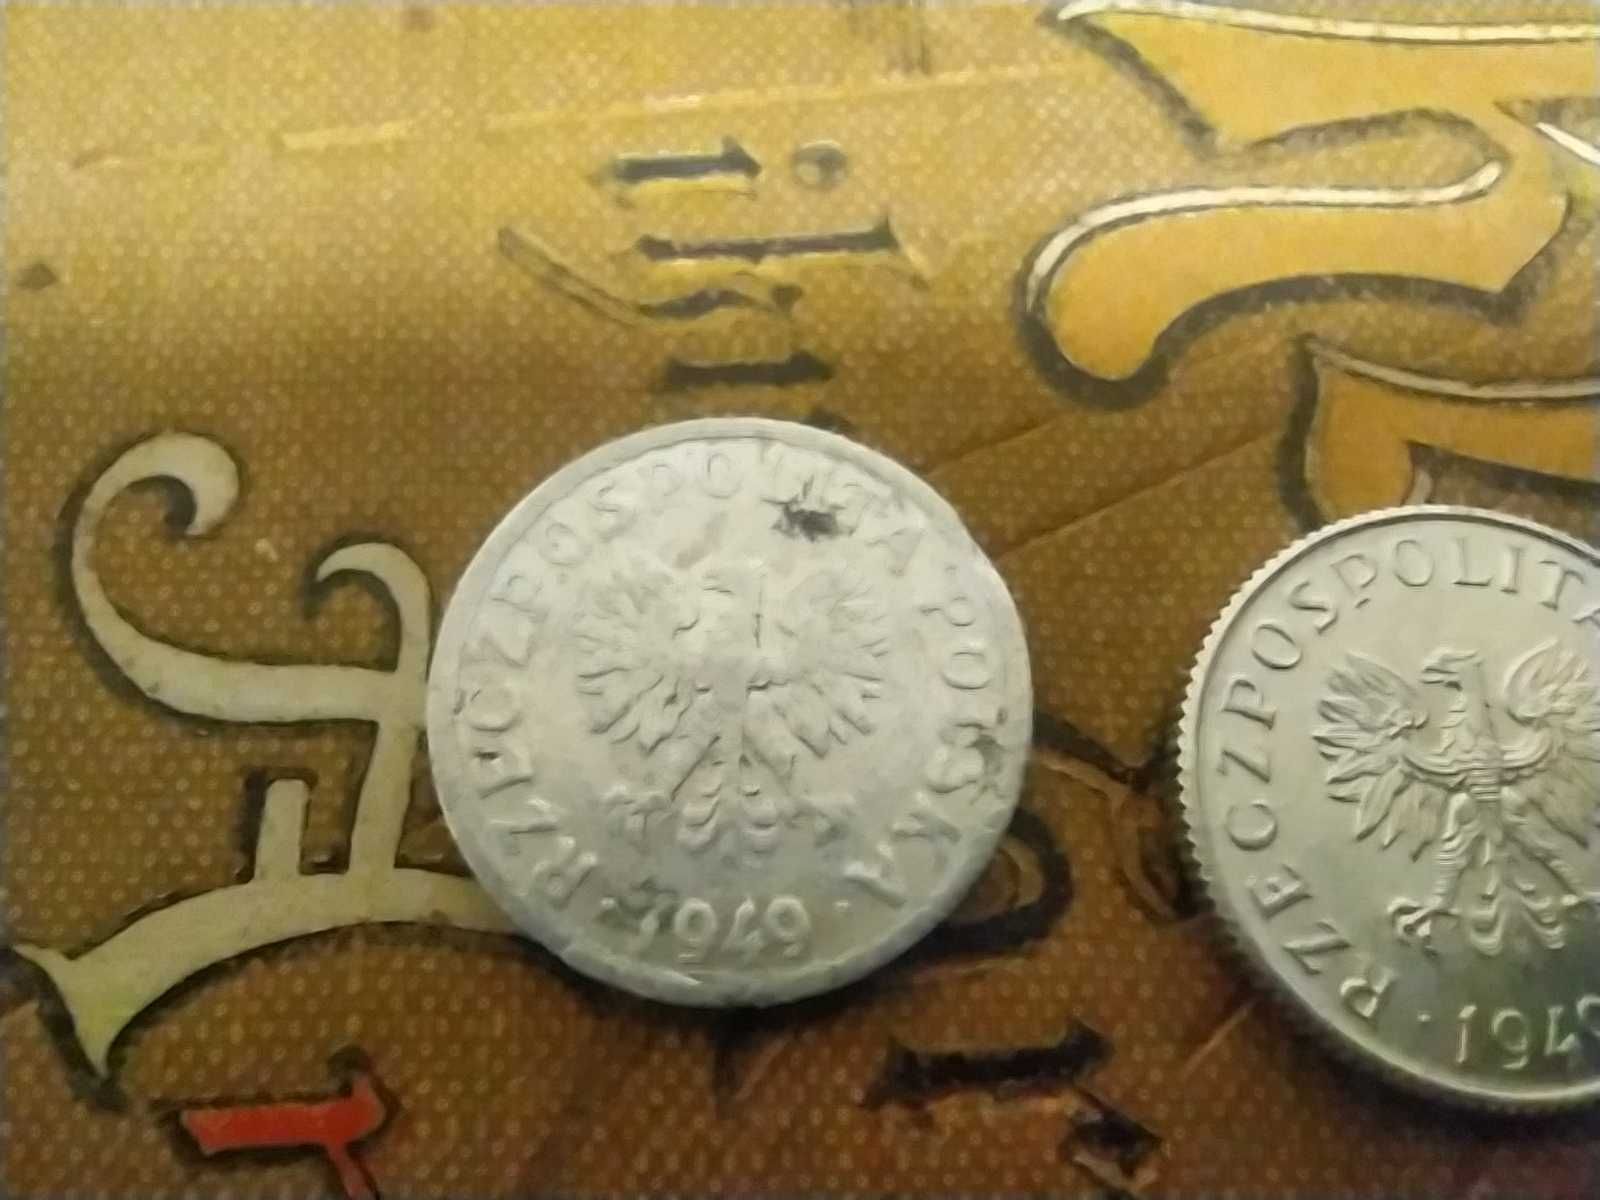 Monety 1 grosz z 1949 roku